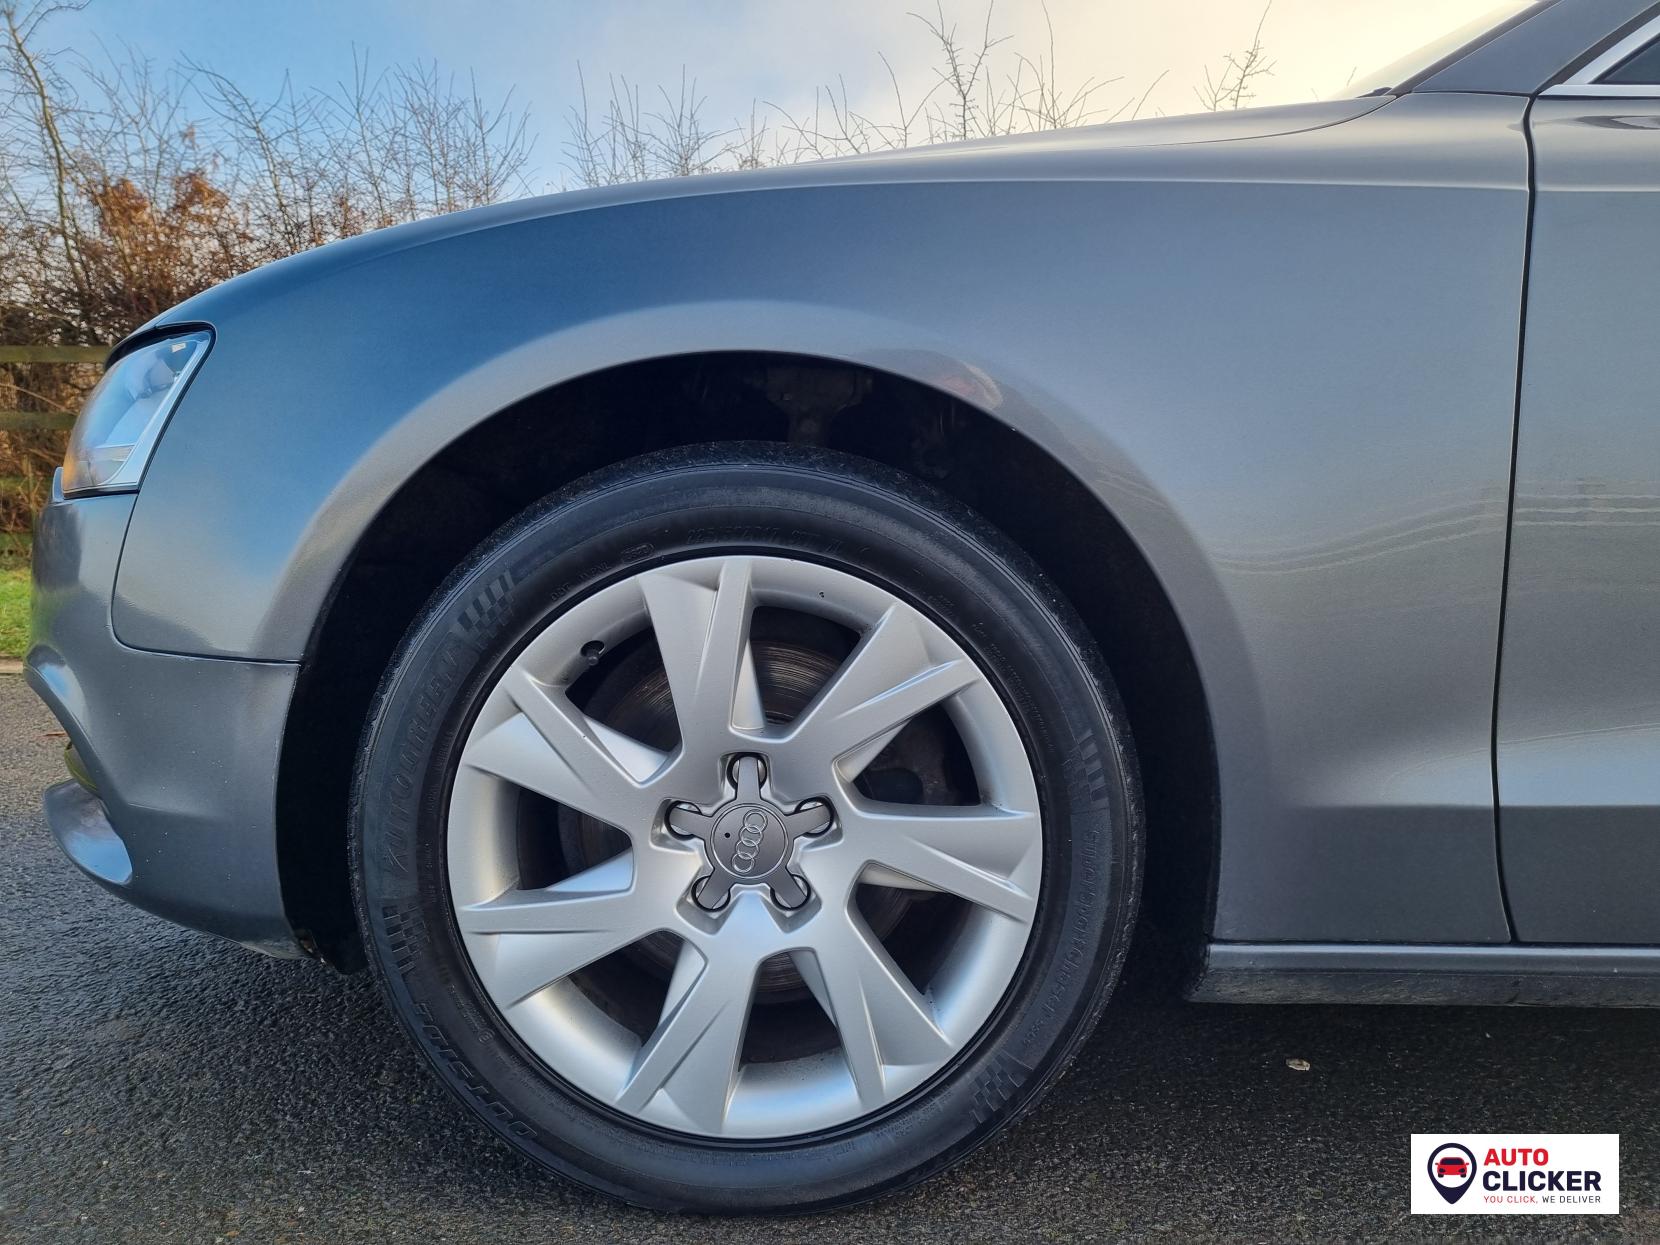 Audi A5 2.0 TDIe Sportback 5dr Diesel Manual Euro 5 (s/s) (136 ps)